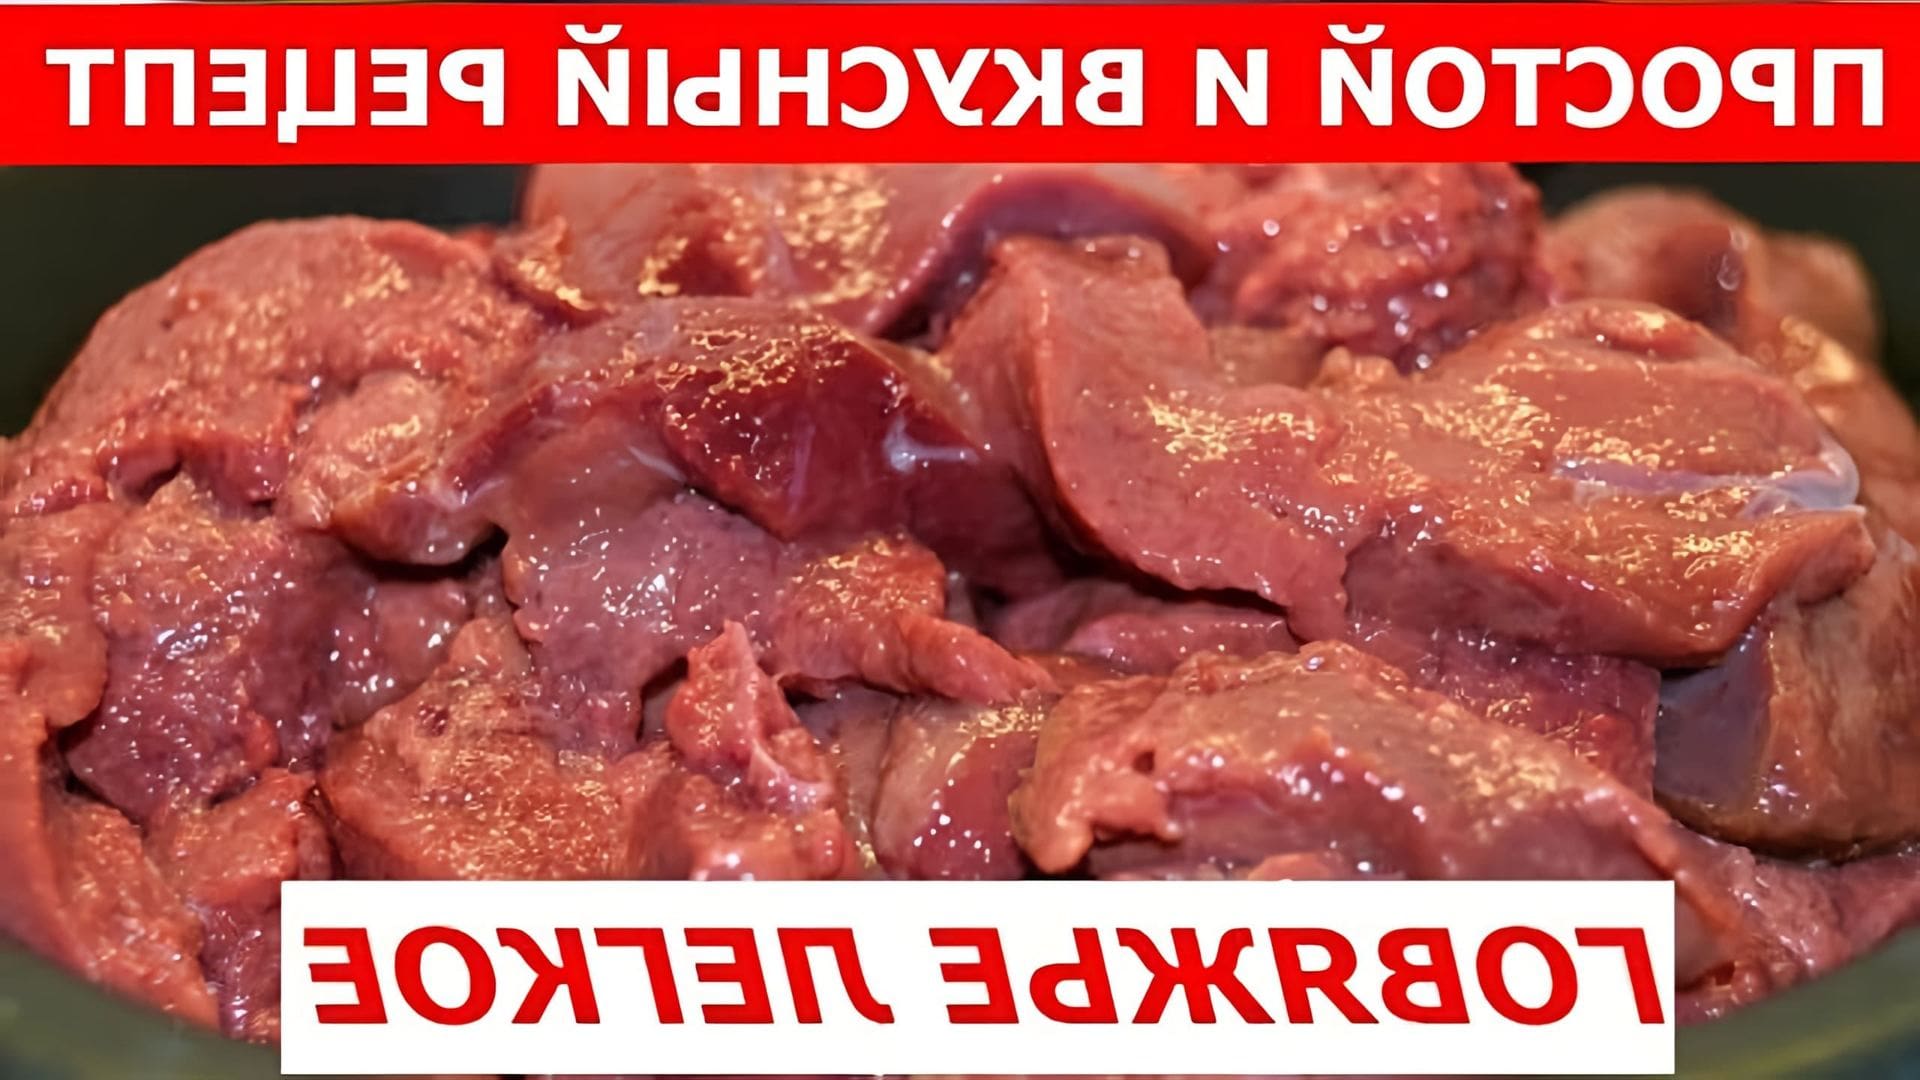 В этом видео Андрей делится простым и вкусным рецептом приготовления говяжьего легкого